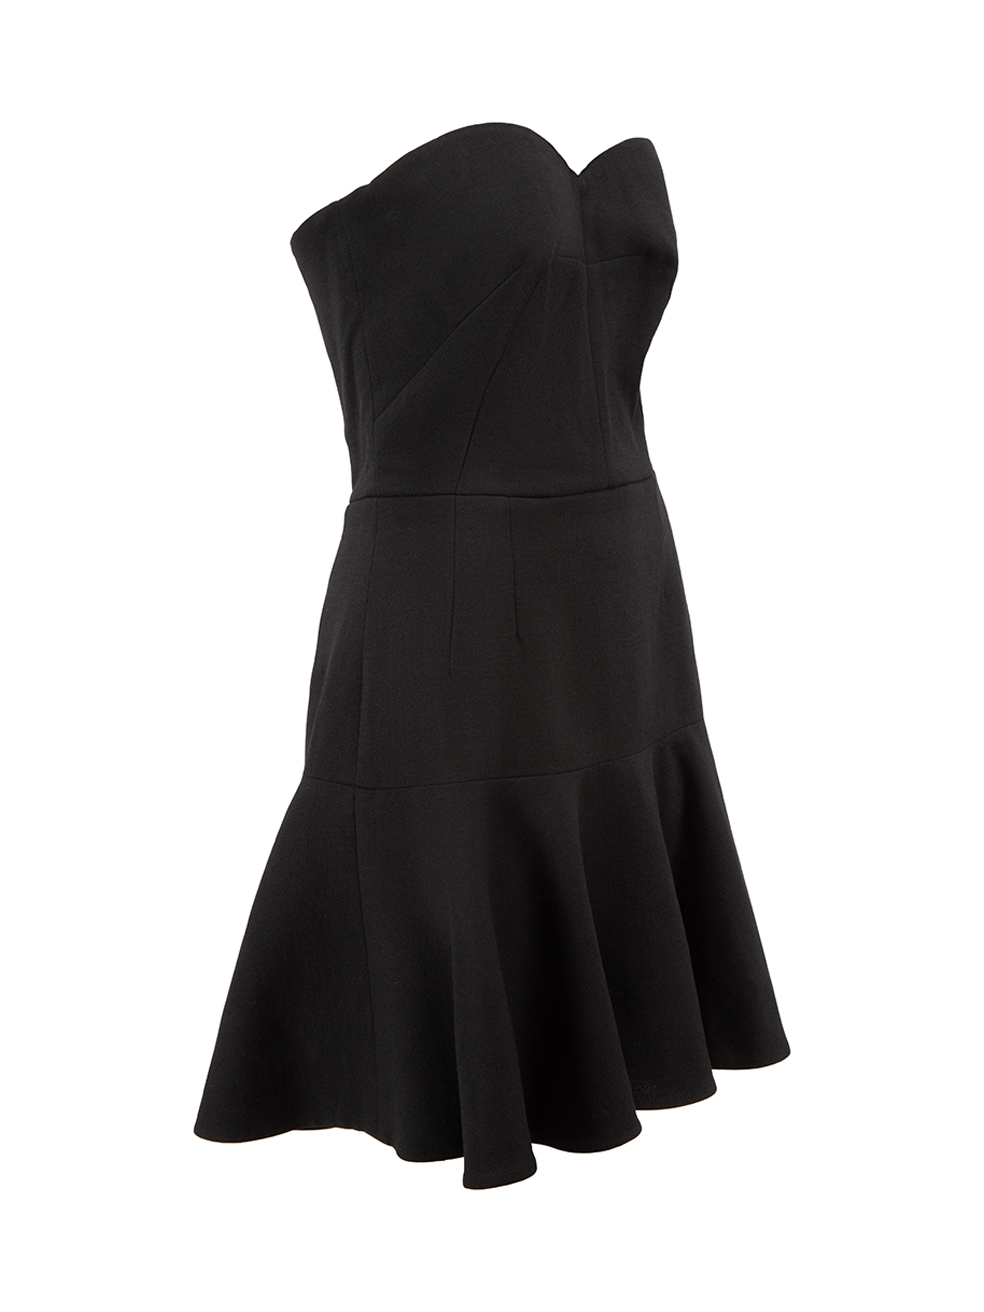 Dolce & Gabbana Women Strapless Mini Dress 44 8 Black Asymmetric